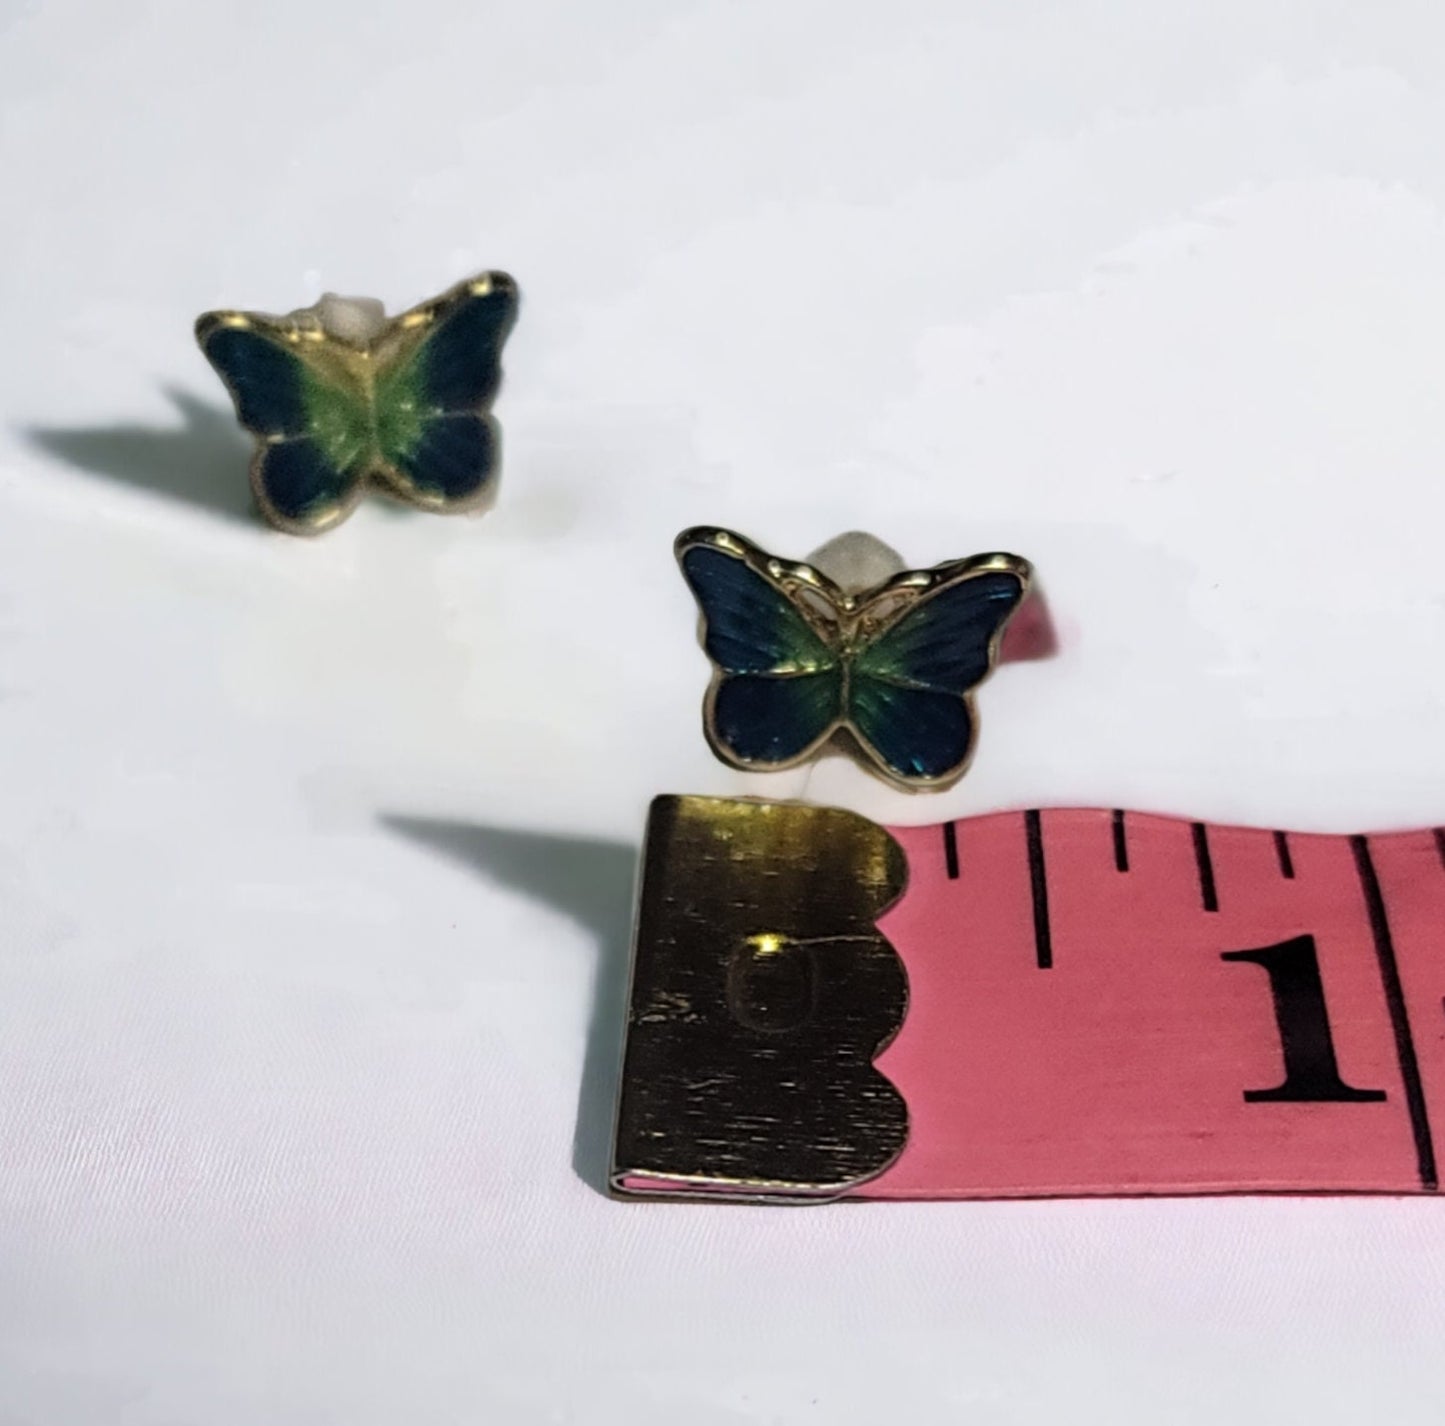 Butterfly post stud earrings